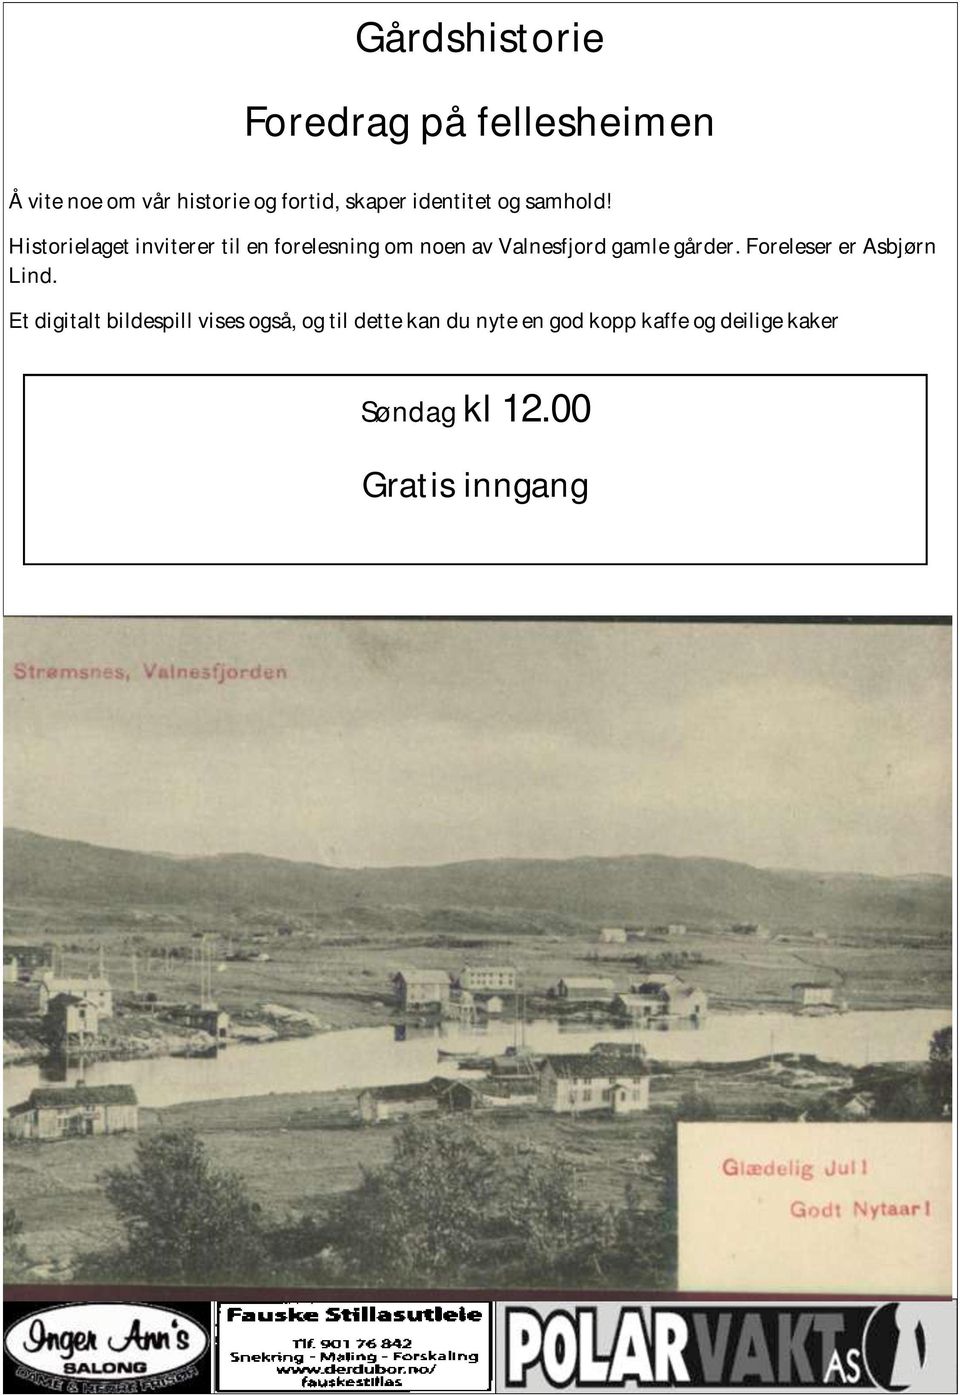 Historielaget inviterer til en forelesning om noen av Valnesfjord gamle gårder.